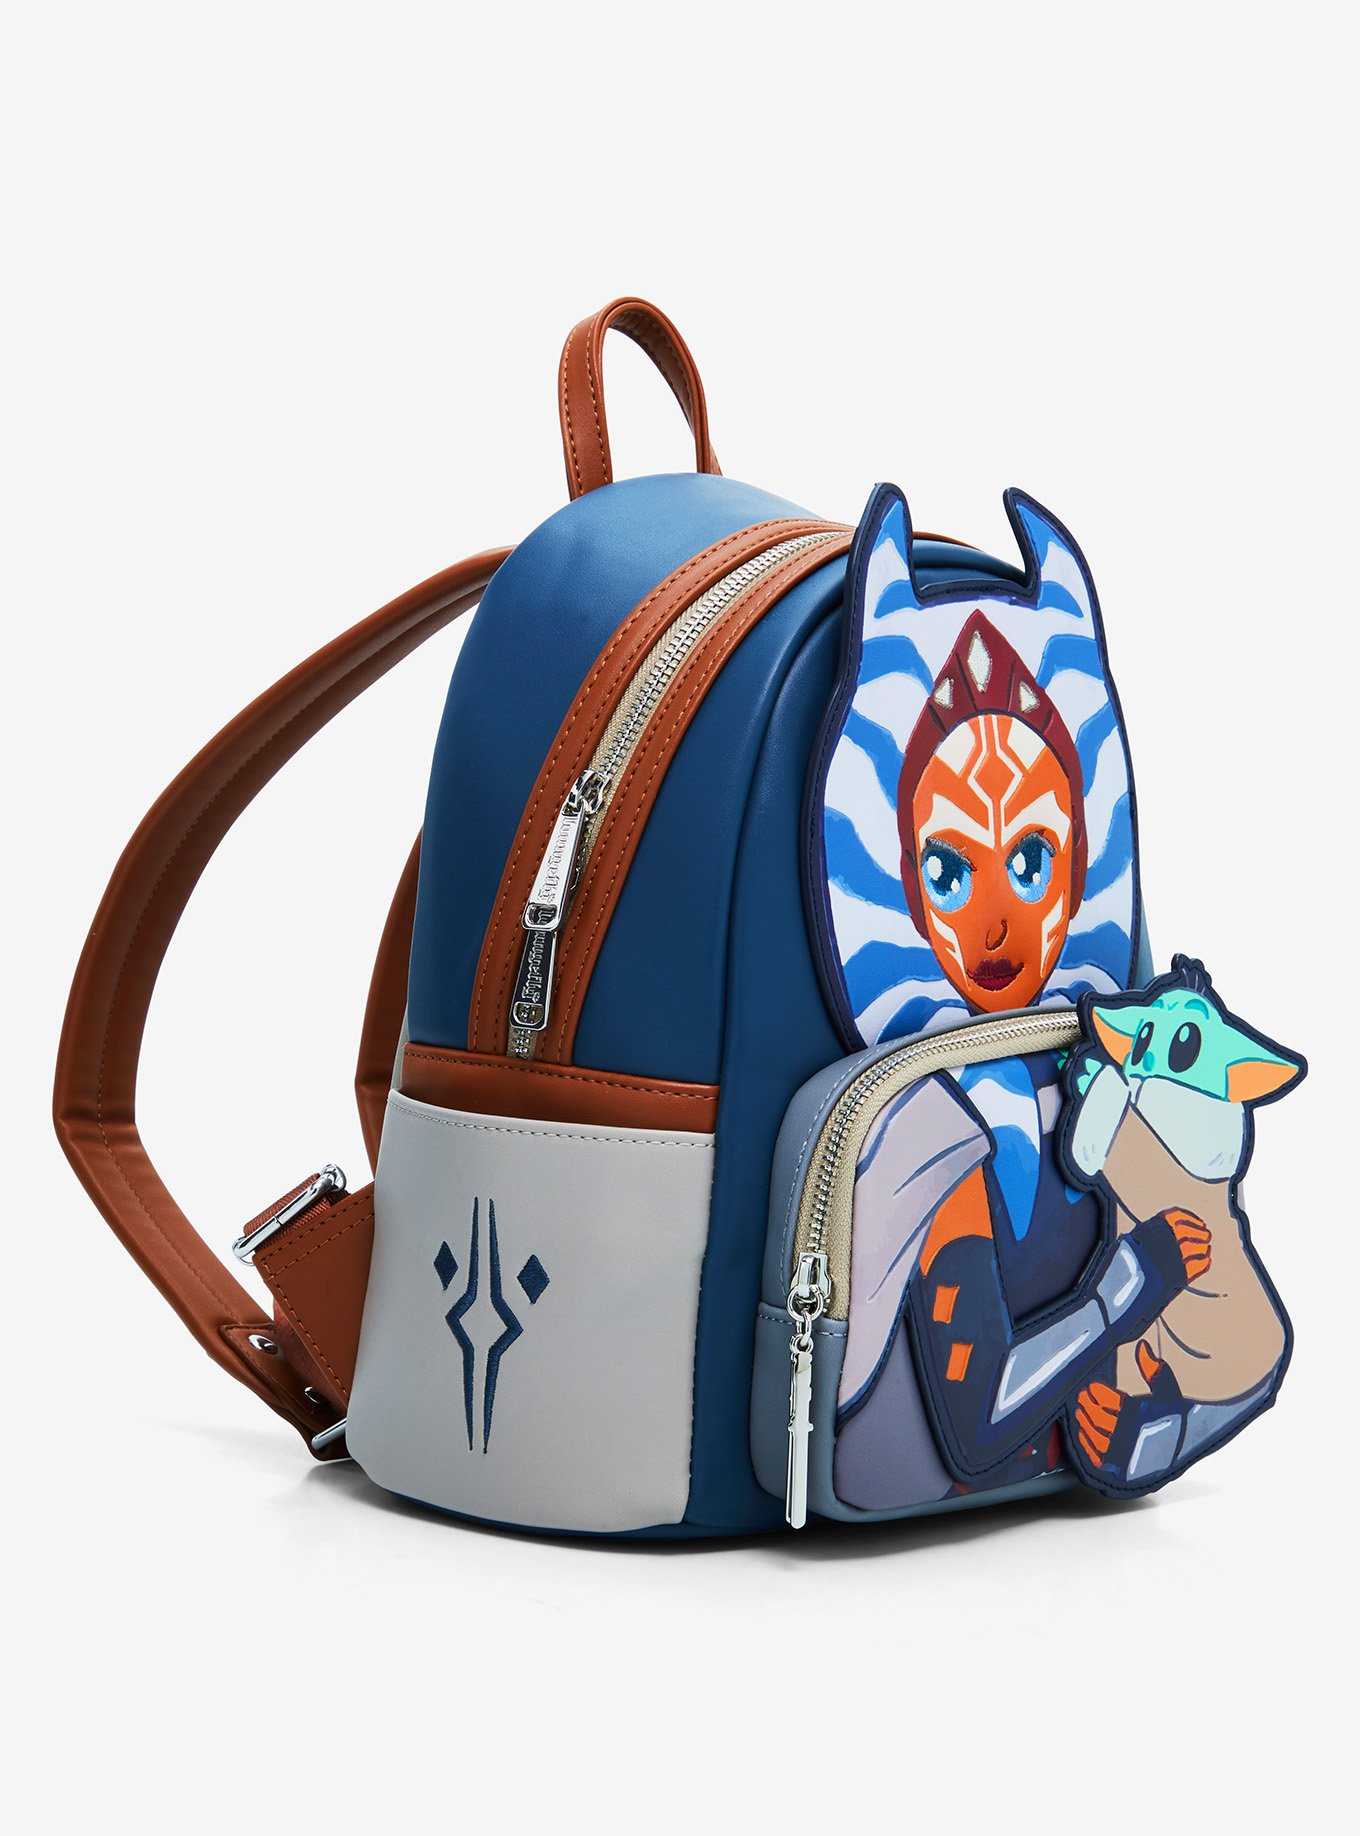 Loungefly Star Wars The Mandalorian Ahsoka & Grogu Mini Backpack, , hi-res